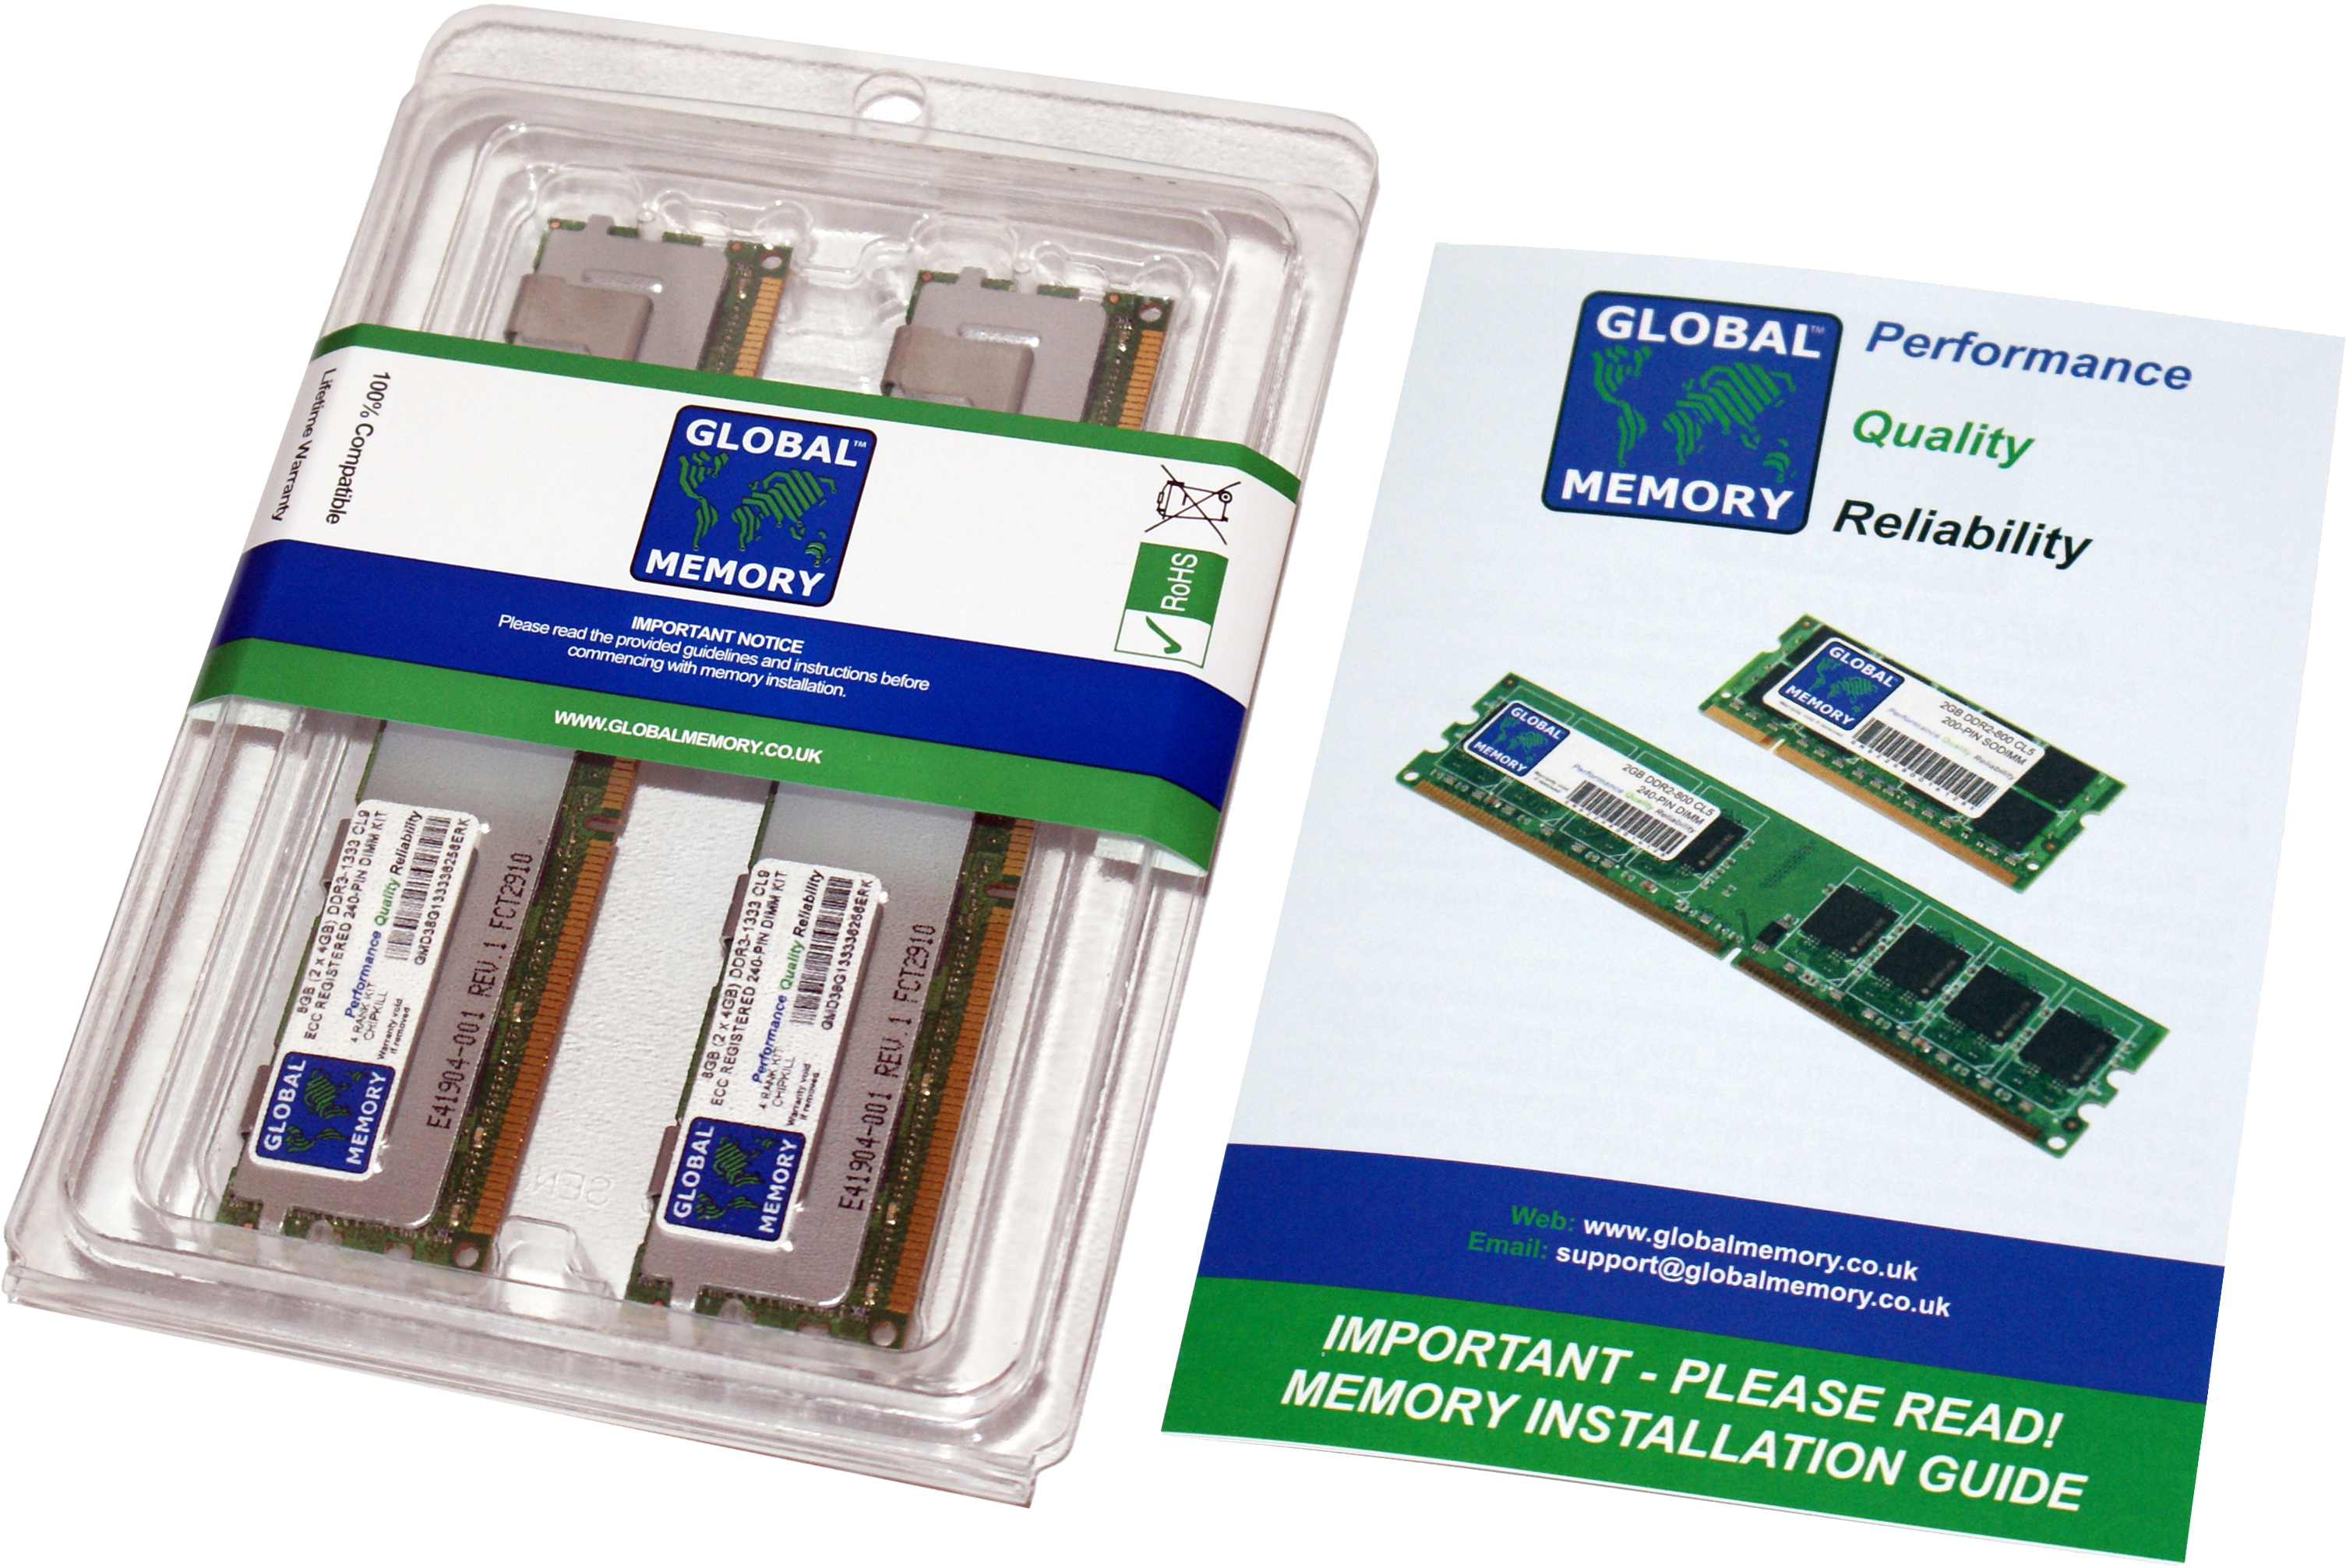 32GB (2 x 16GB) DDR3 1066MHz PC3-8500 240-PIN ECC REGISTERED DIMM (RDIMM) MEMORY RAM KIT FOR HEWLETT-PACKARD SERVERS/WORKSTATIONS (8 RANK KIT NON-CHIPKILL)